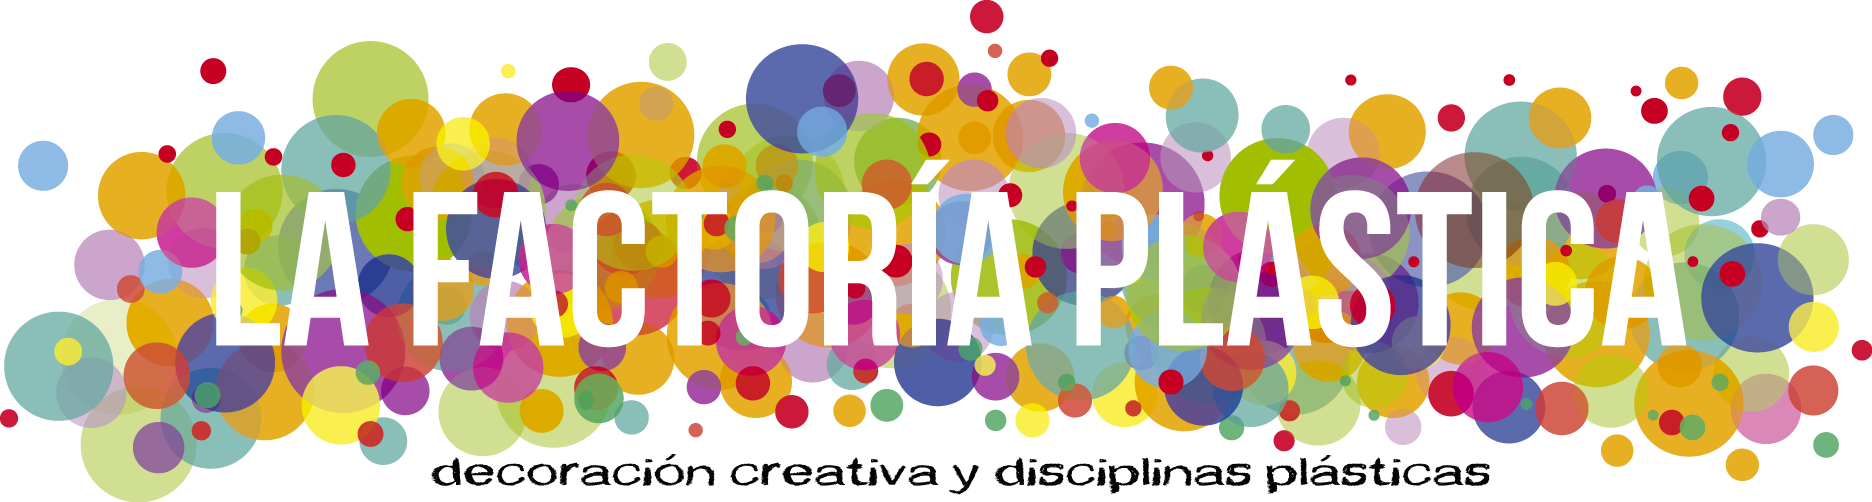 La Factoría Plástica - decoracion creativa y disciplinas plasticas